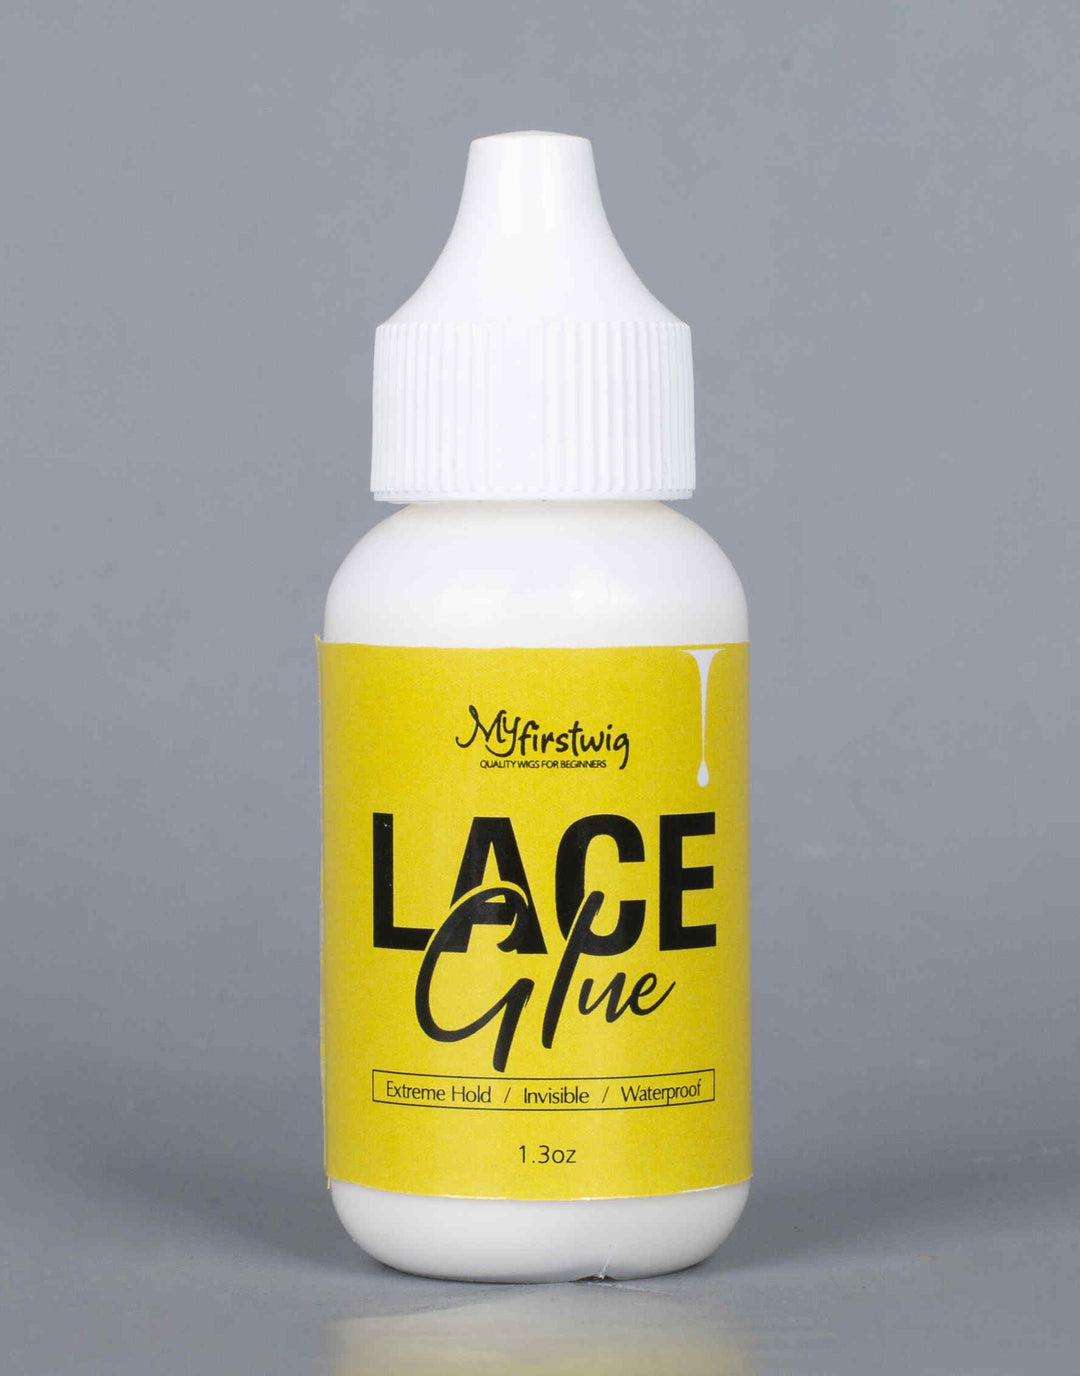 Myfirstwig Lace Glue